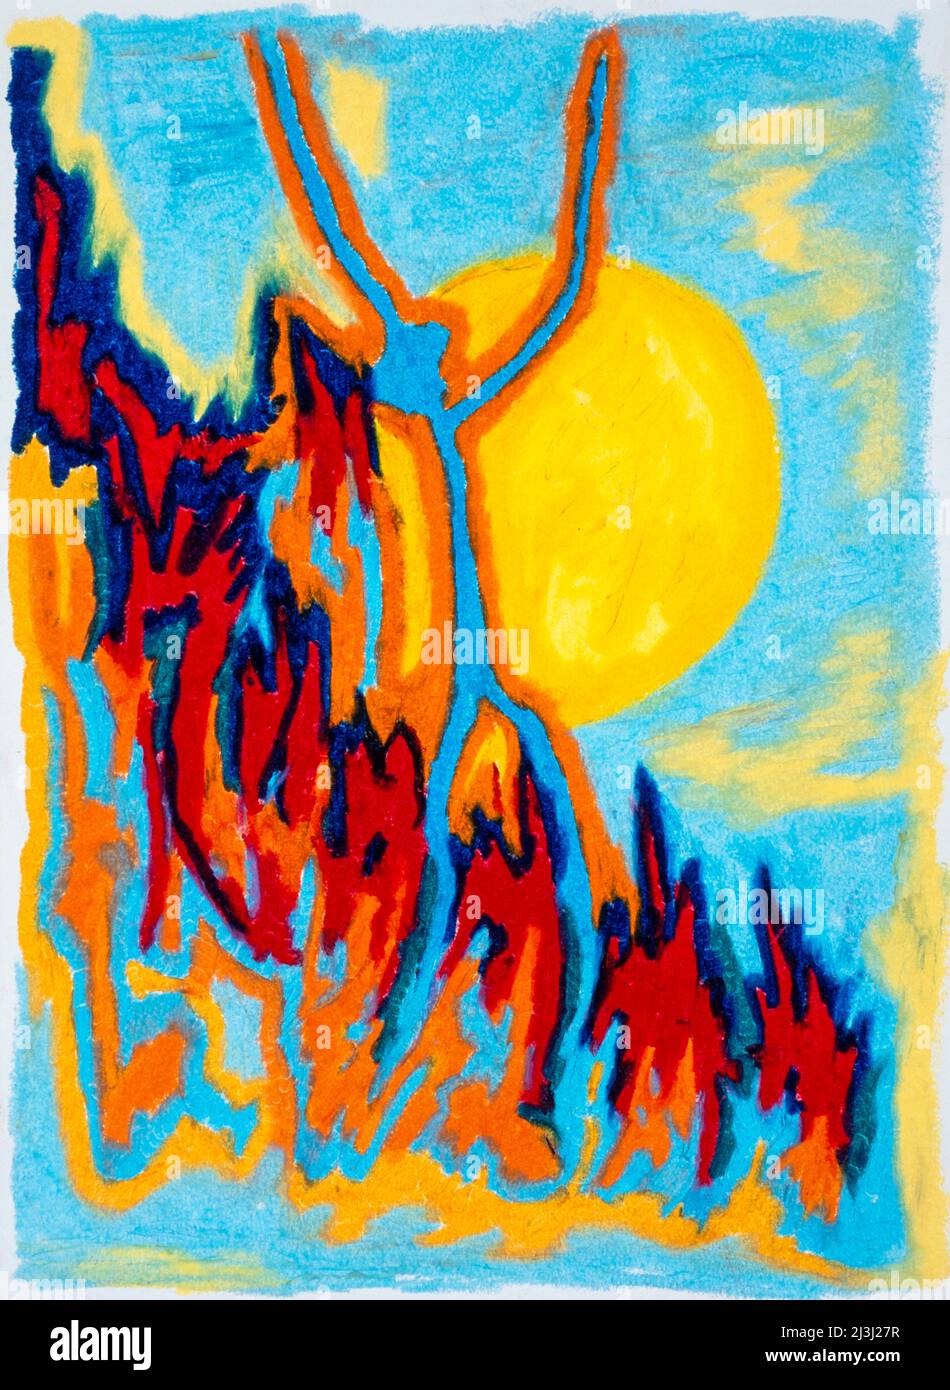 Gemälde von Peter Schütte, Save Me, Figur mit nach oben gestreckten Armen, die Hilfe suchen, umgeben von Feuer, in großer Not, das Licht, der Weg vor seinen Augen, kann sich aber nicht befreien, helle Farben Stockfoto